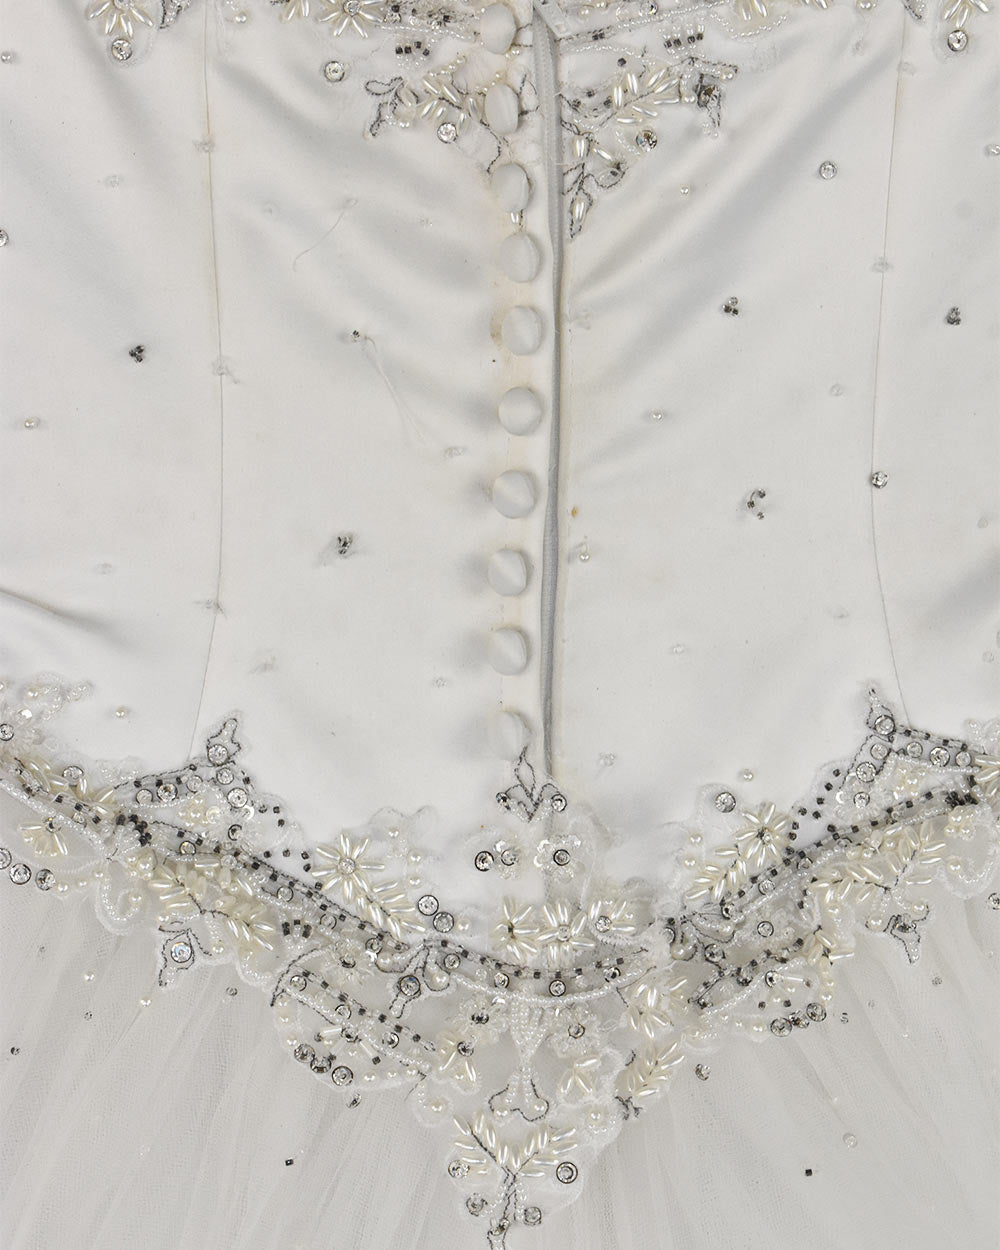 Mori Lee White Princess Wedding Dress Size 6